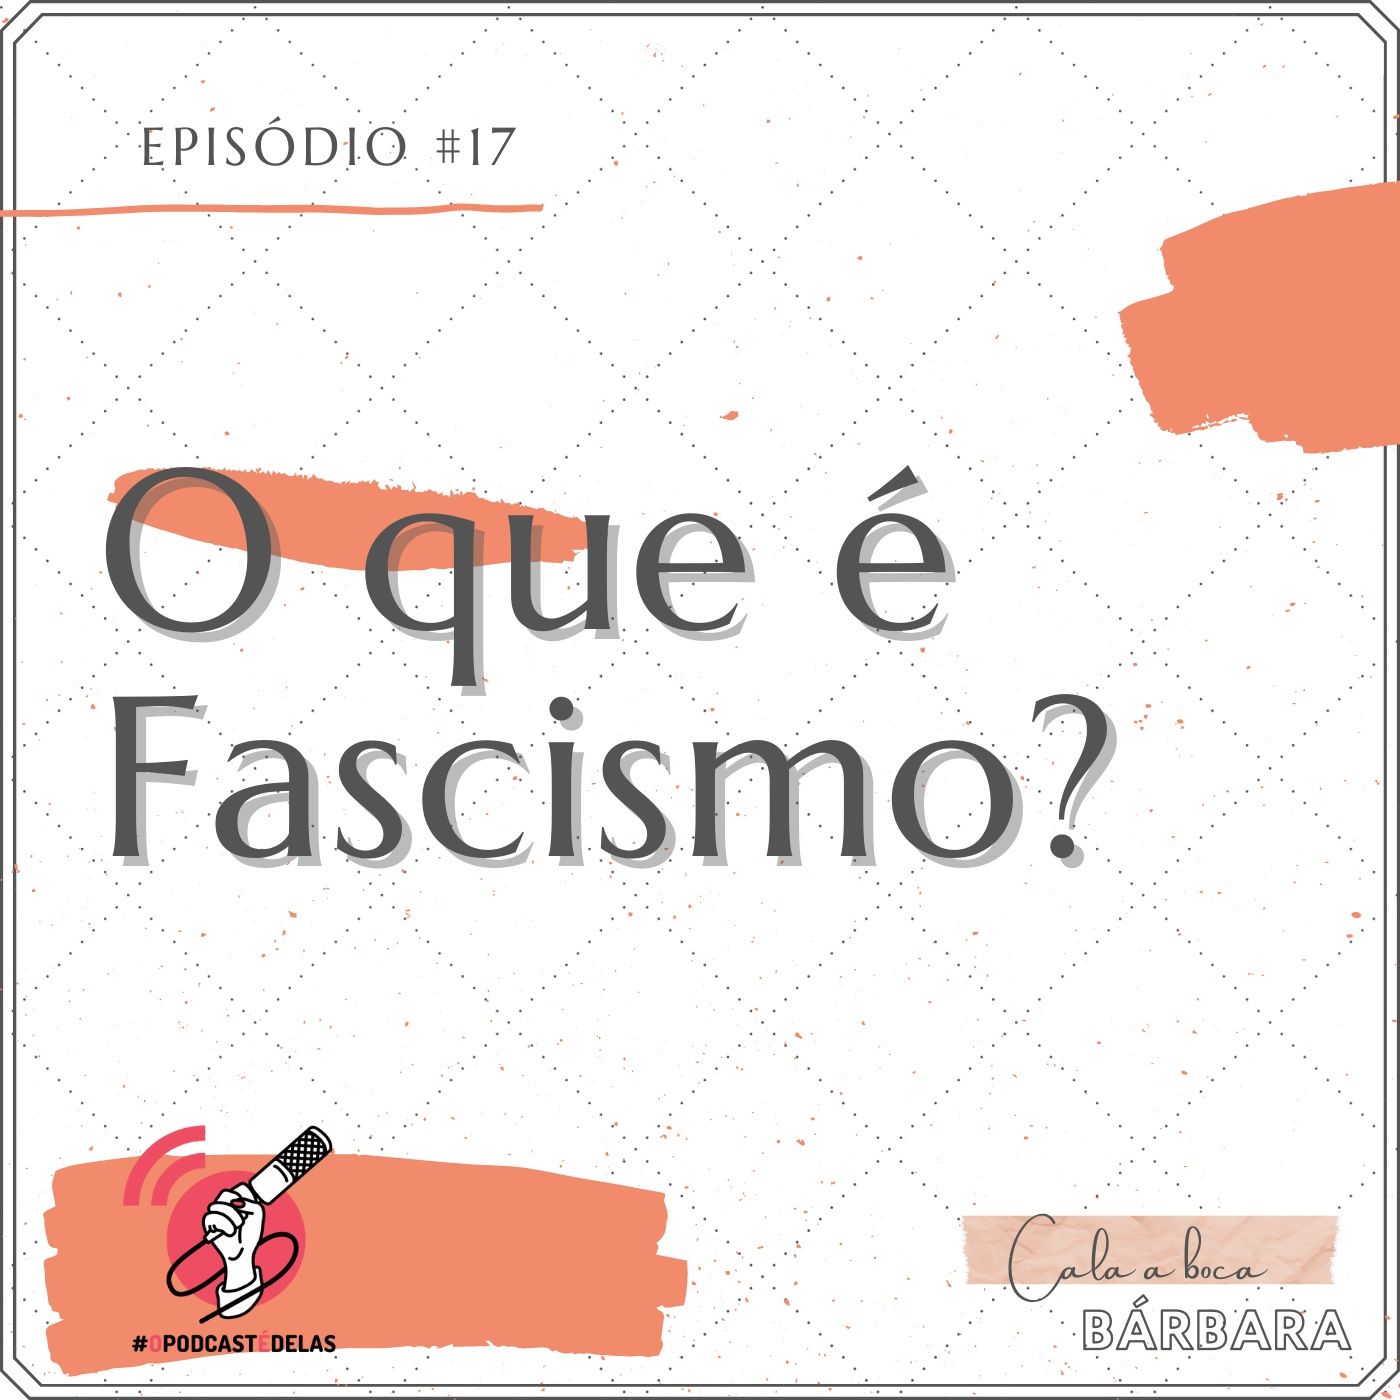 Cala a boca, Bárbara #17 – O que é Fascismo?